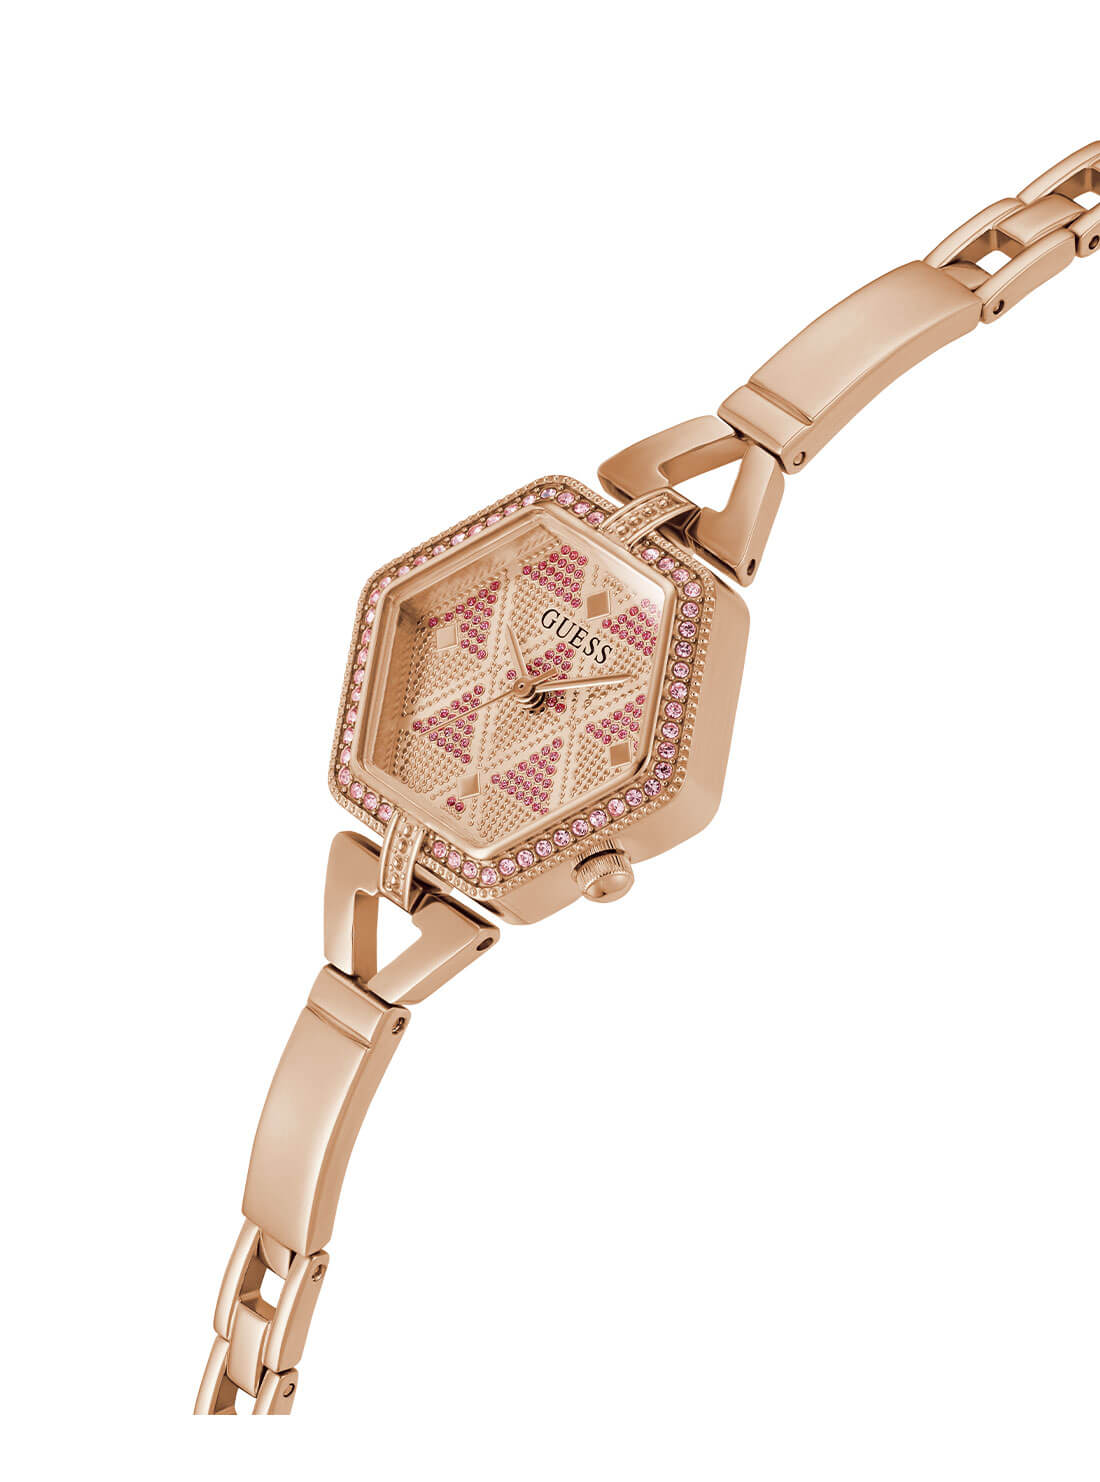 Rose Gold Audrey Glitz Hexagonal Link Watch | GUESS Women's Watches | detail view